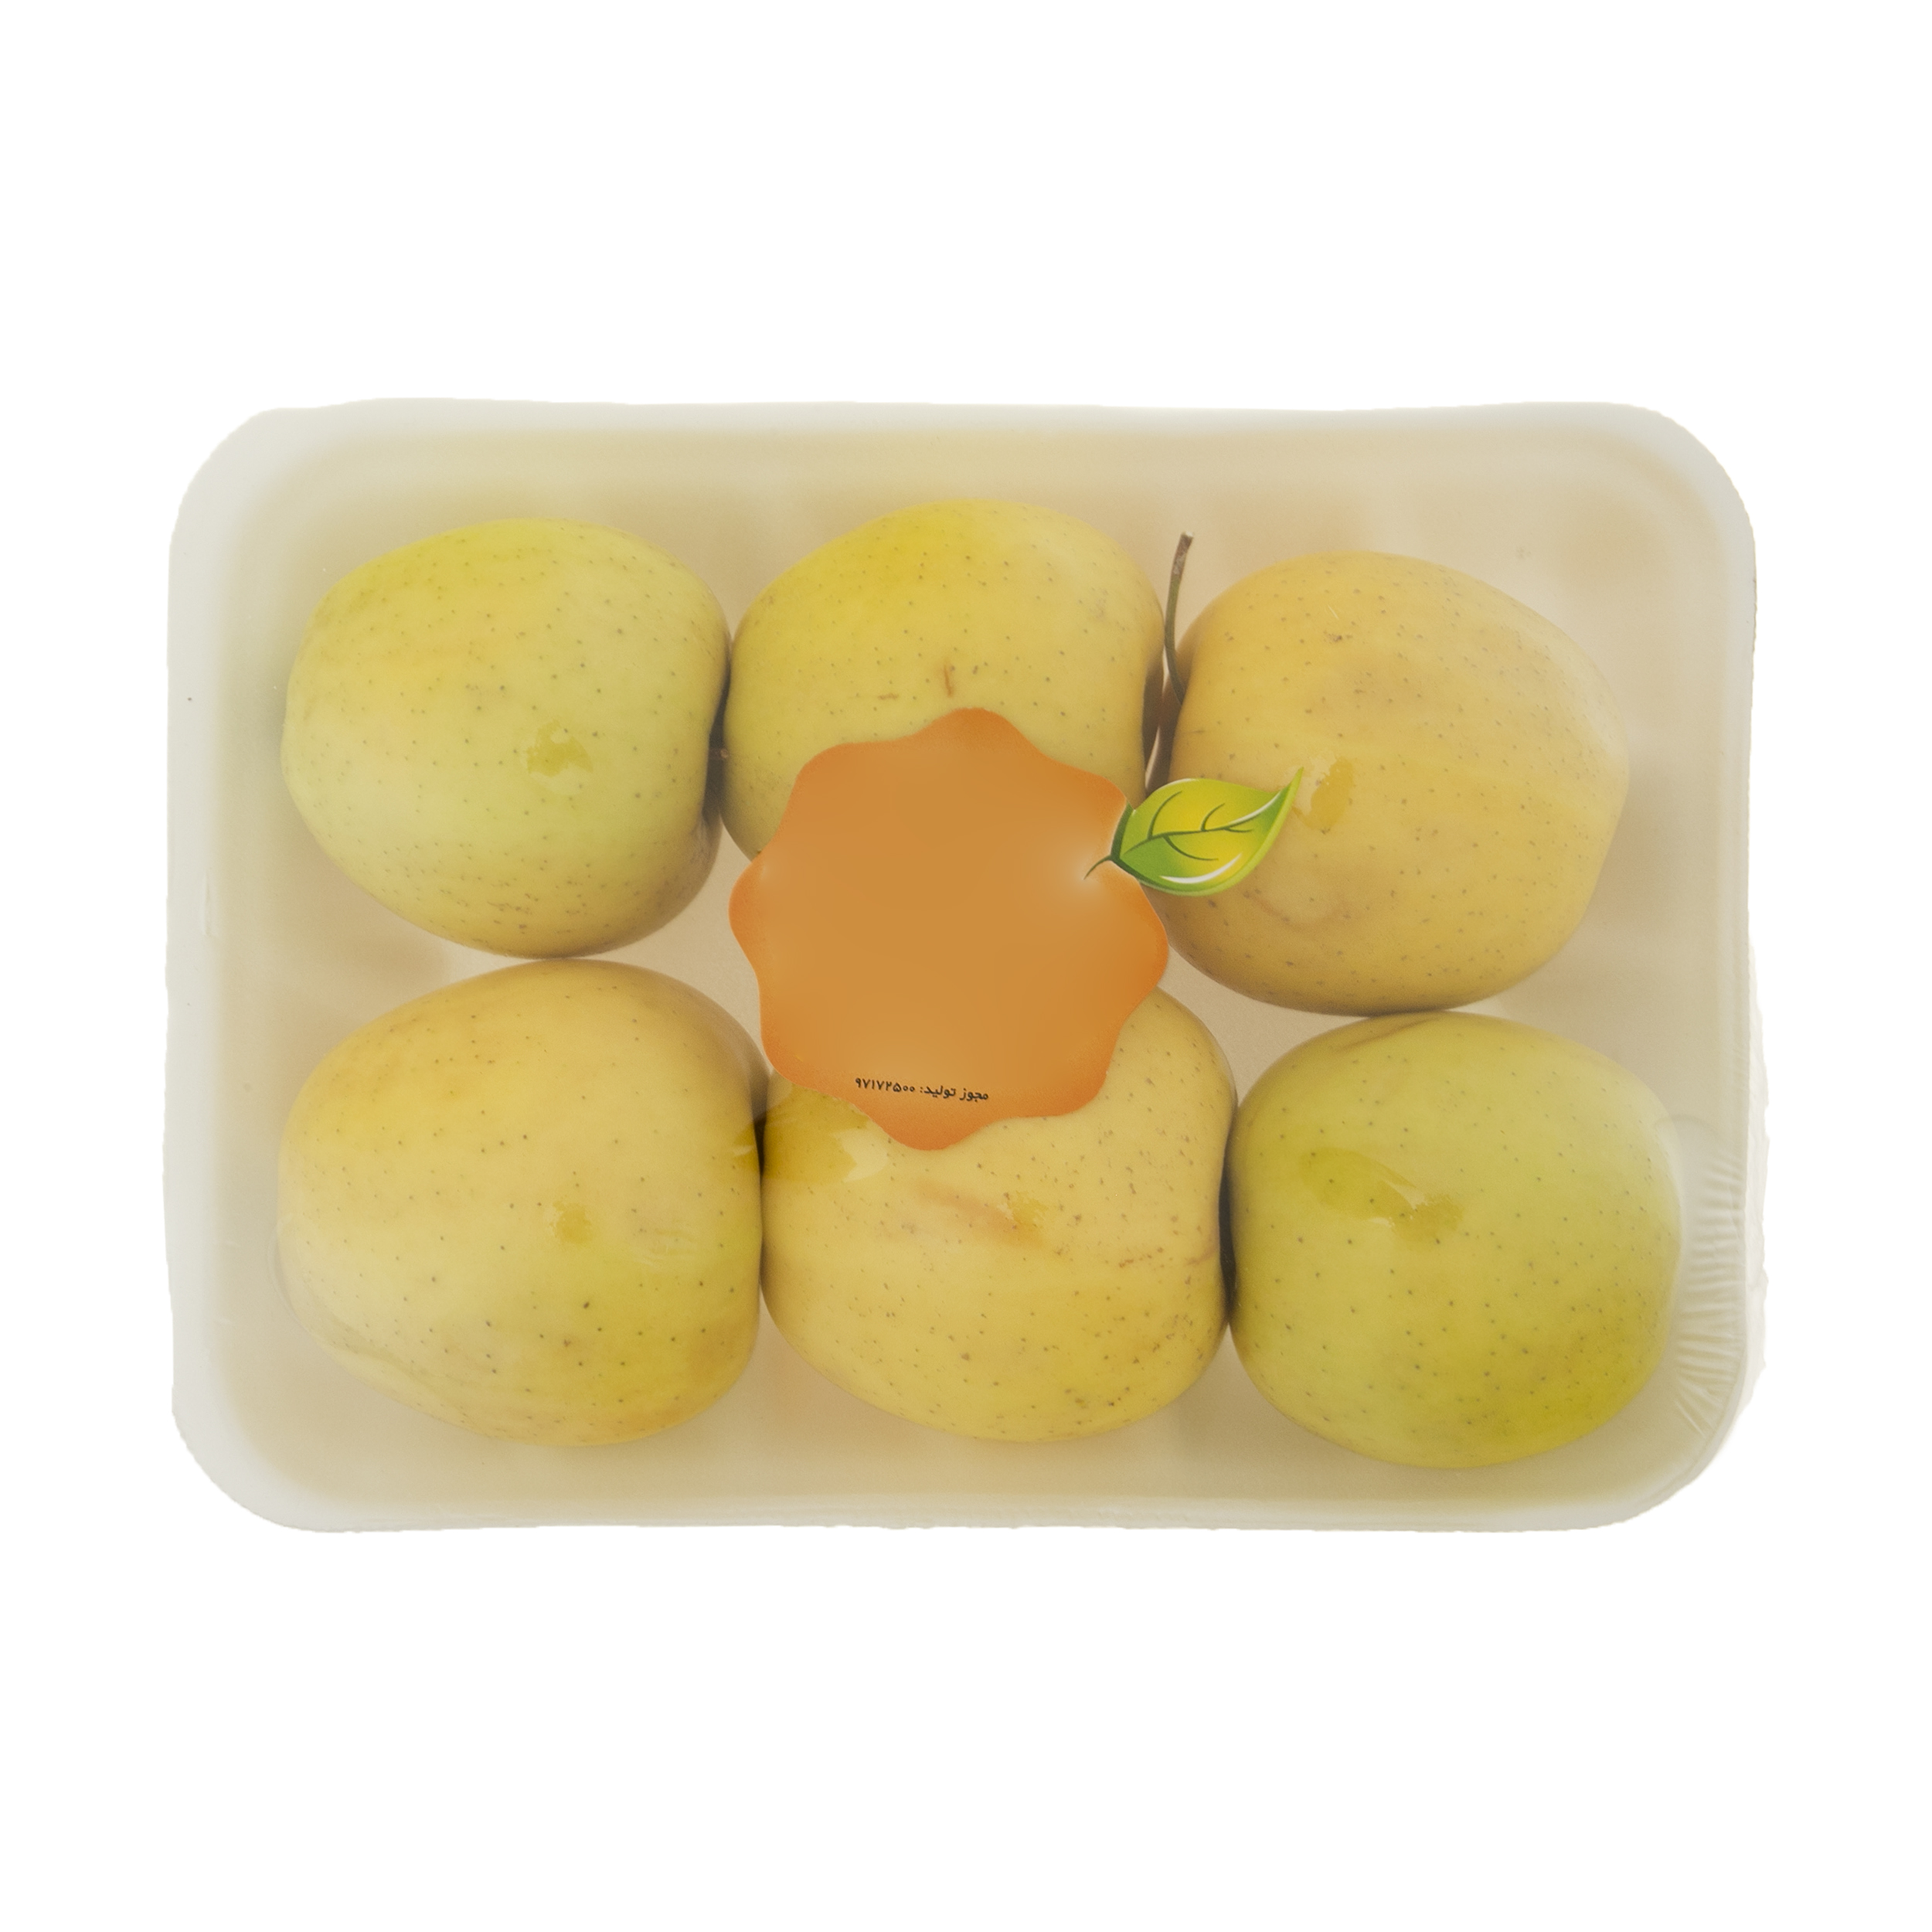 سیب آبگیری میوکات - 1 کیلوگرم